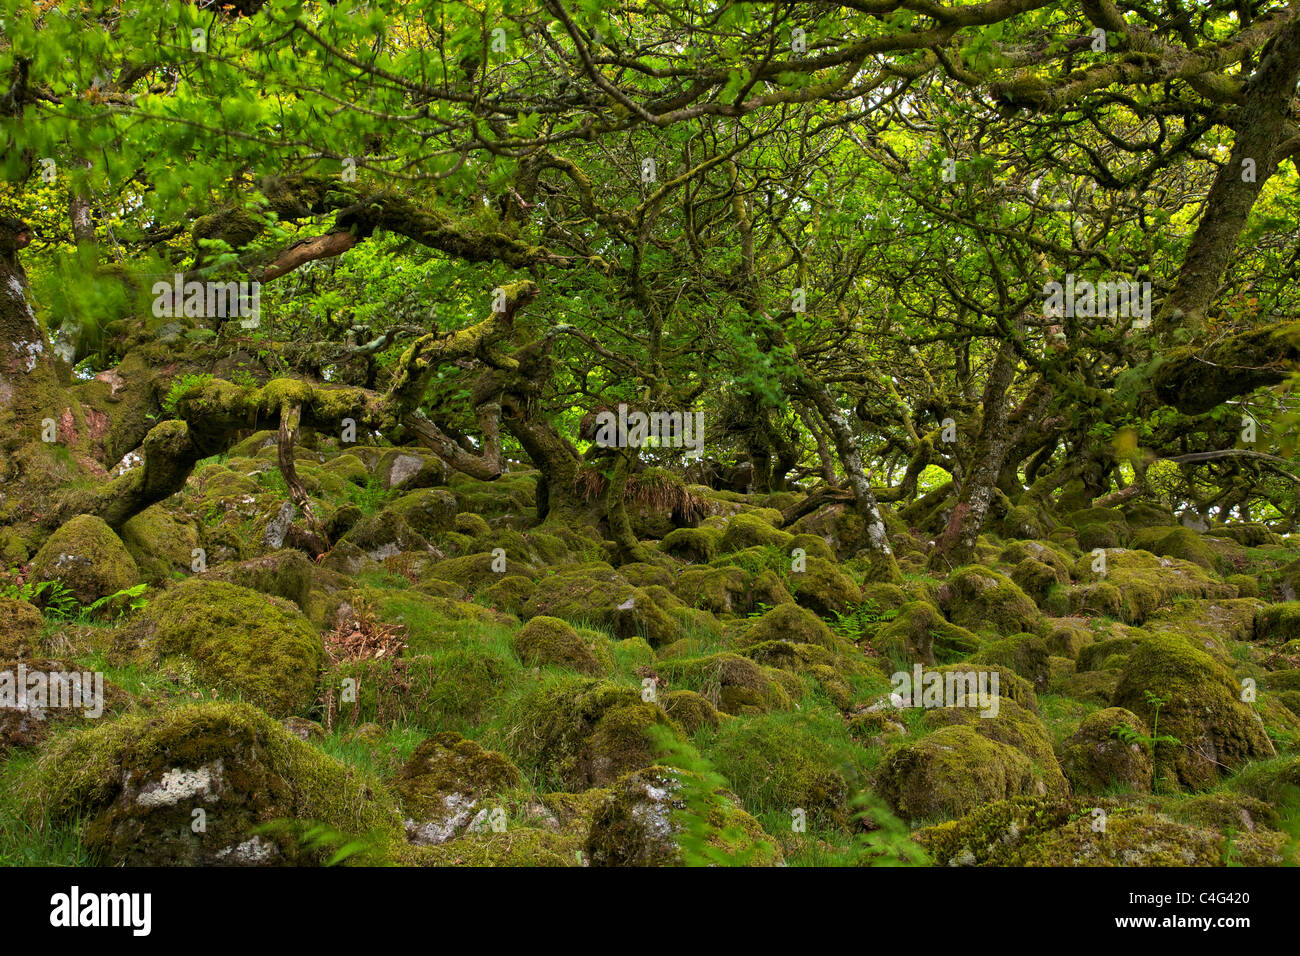 Roverella e moss in Wistman il legno Dartmoor Devon England Regno Unito GB Isole britanniche Foto Stock